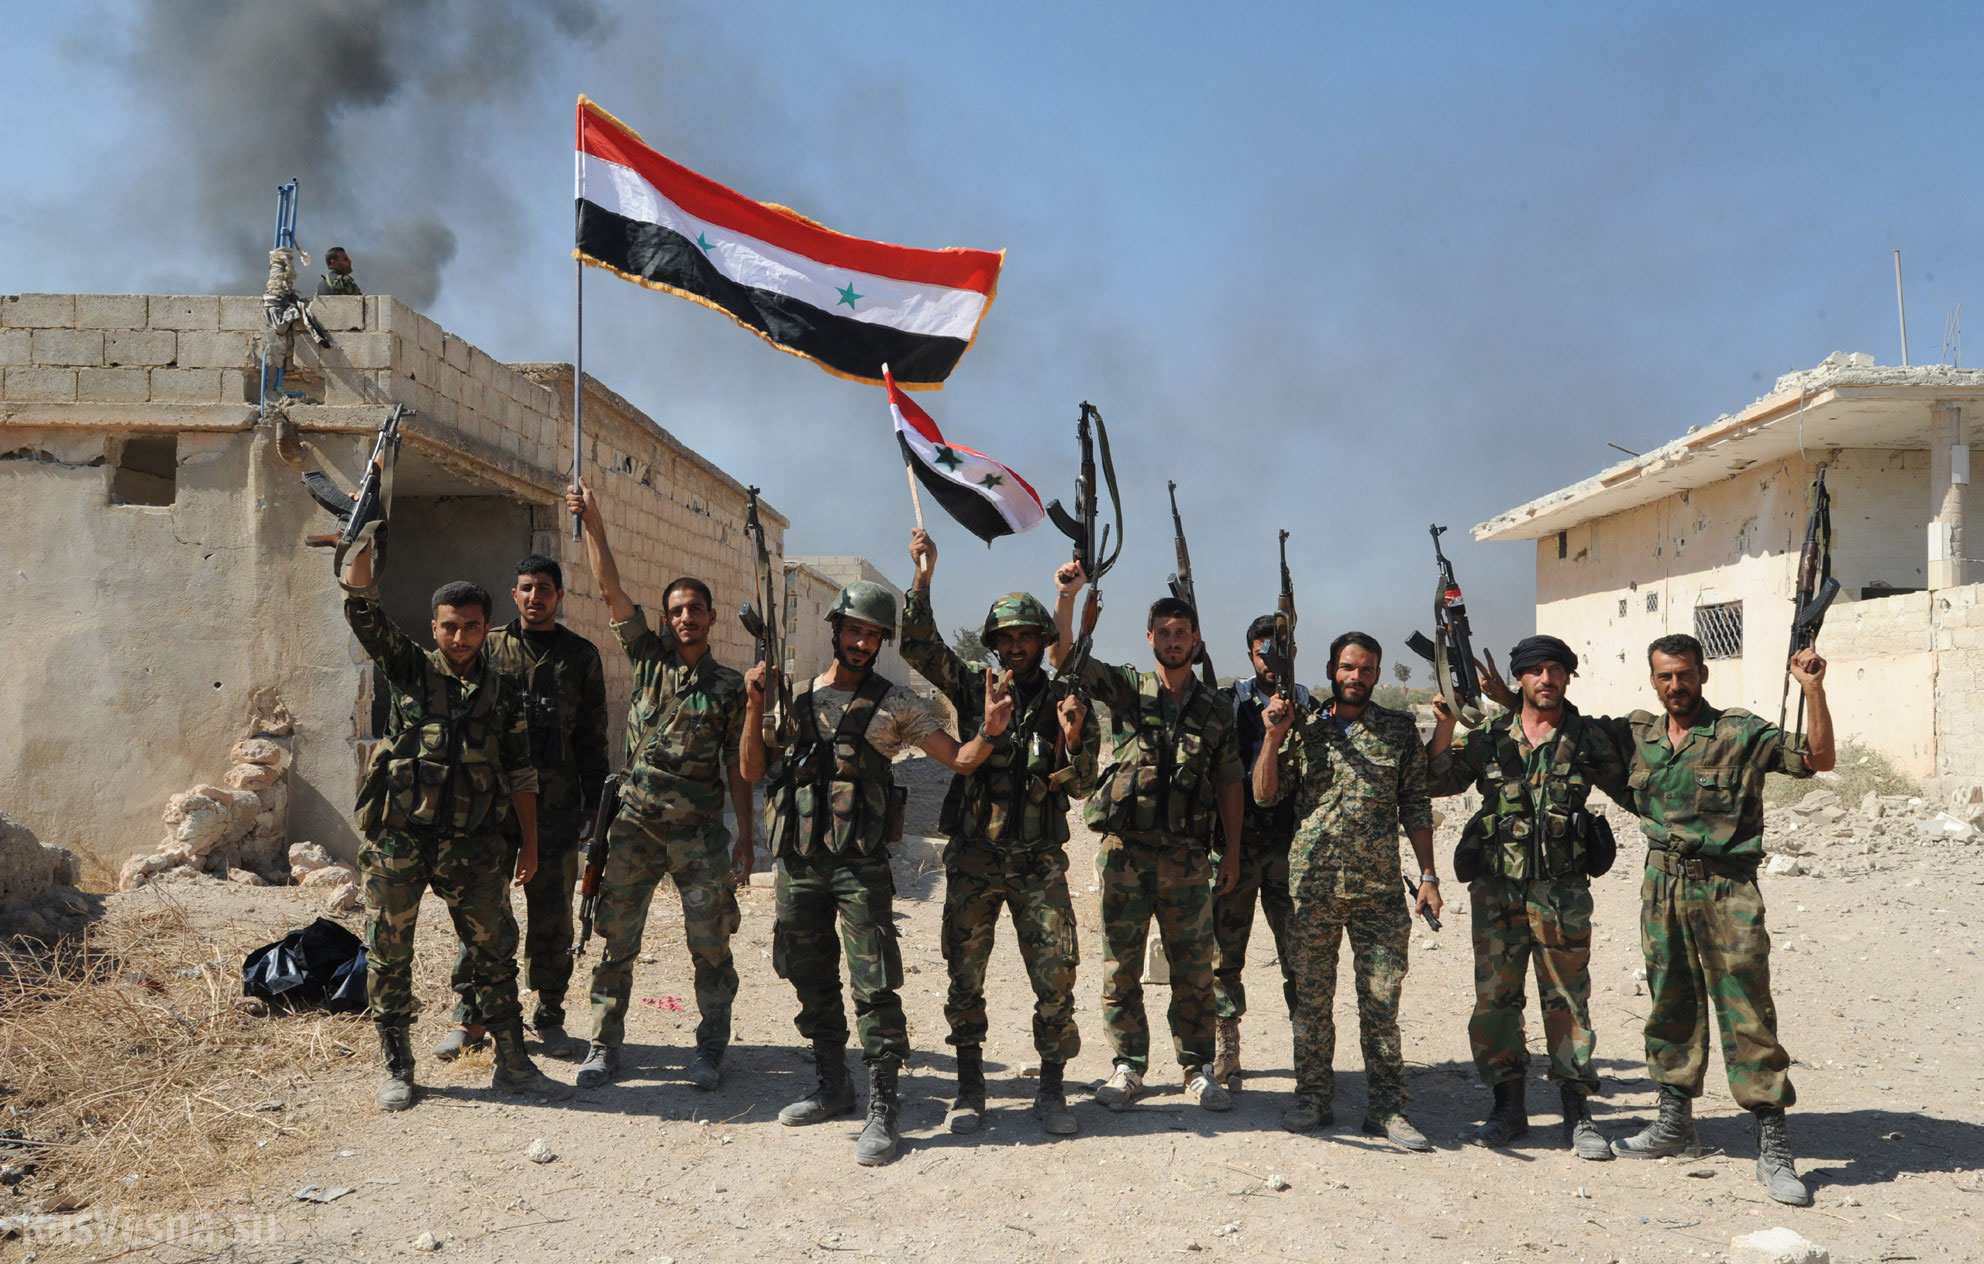 Սիրիայի բանակը վերահսկողություն է սահմանել Ռաս-Ալ-Այն շրջանի մի շարք գյուղերում